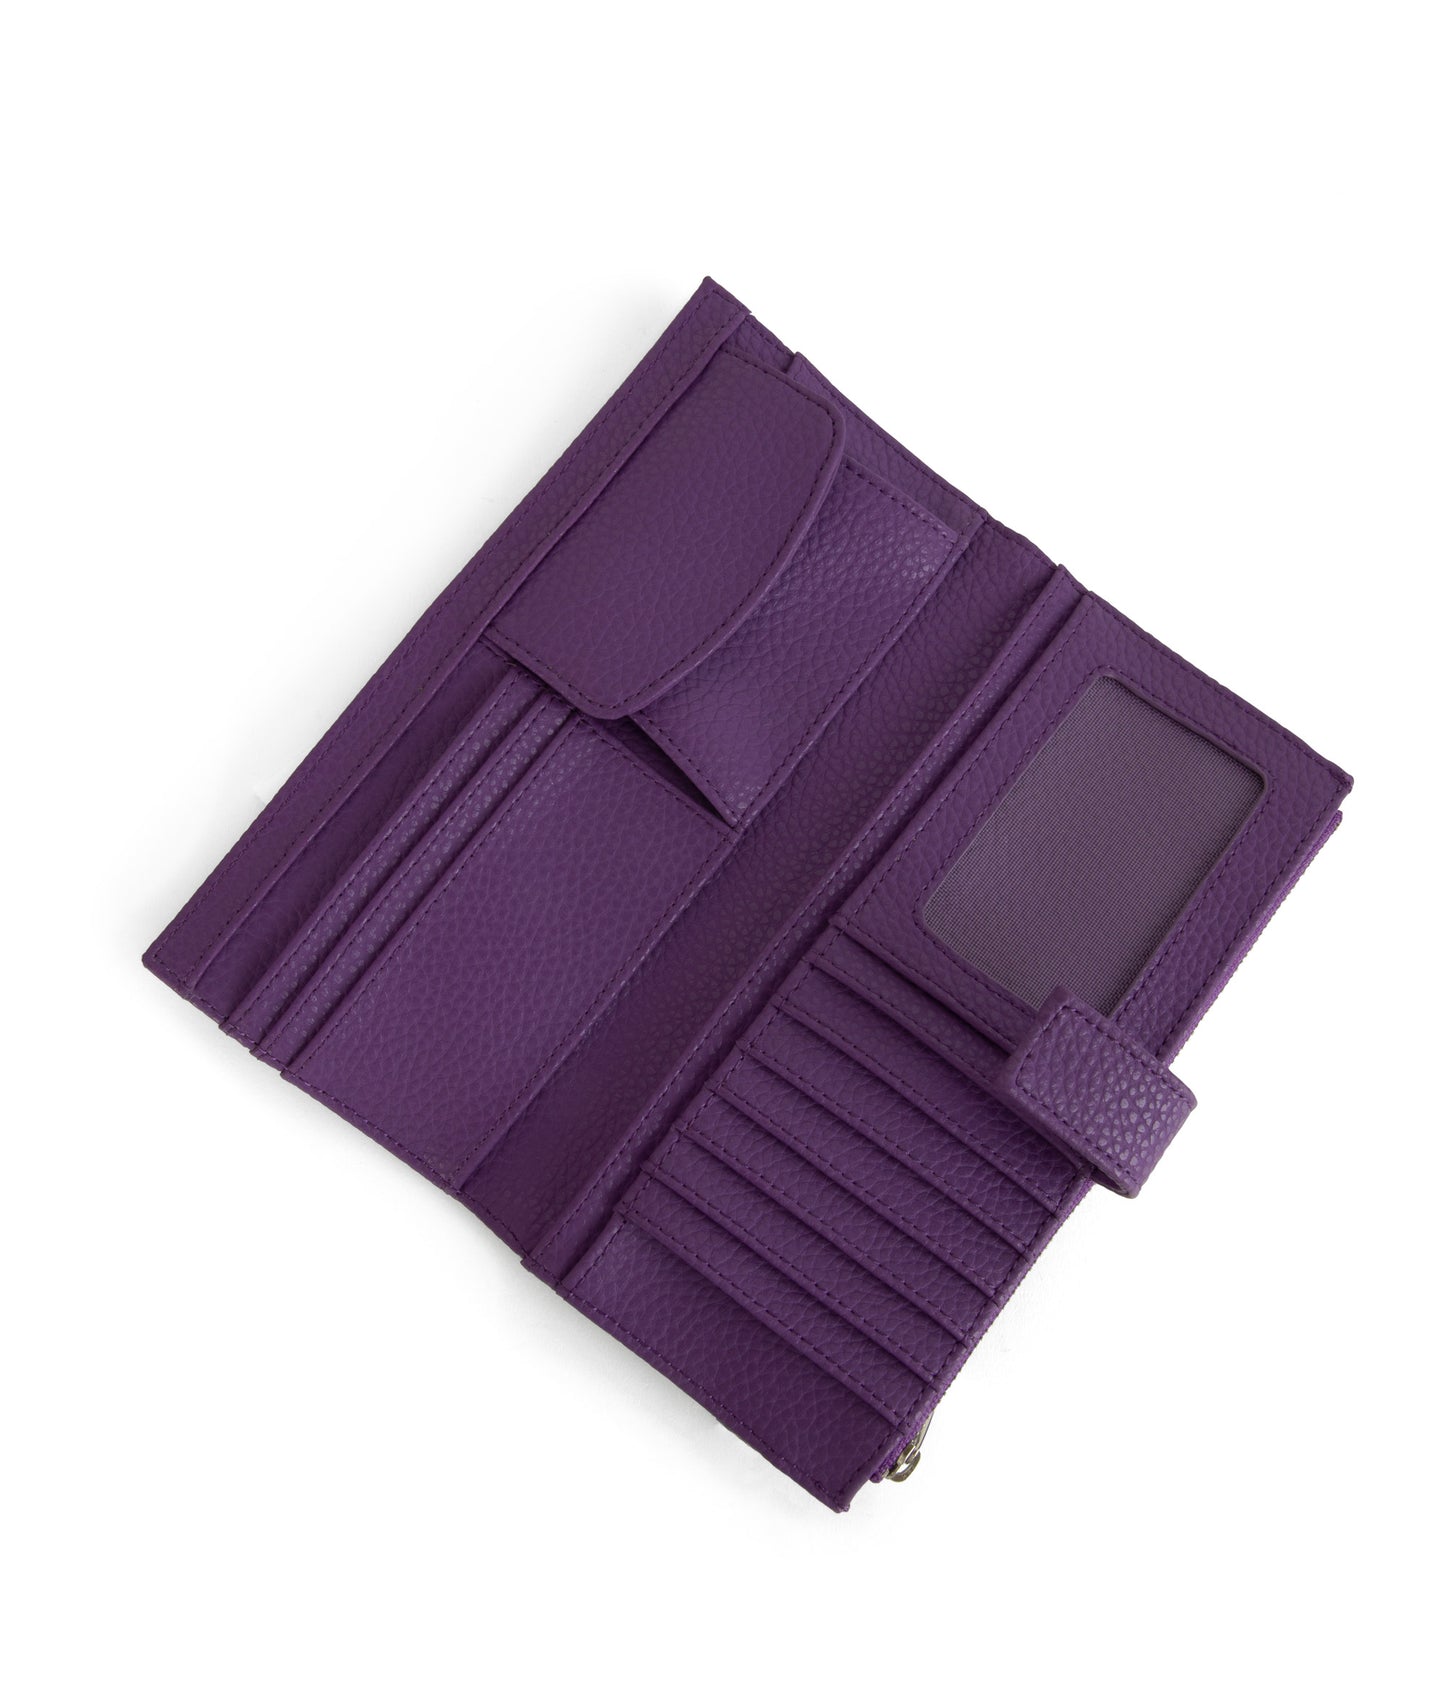 variant:: violet -- motiv purity violet